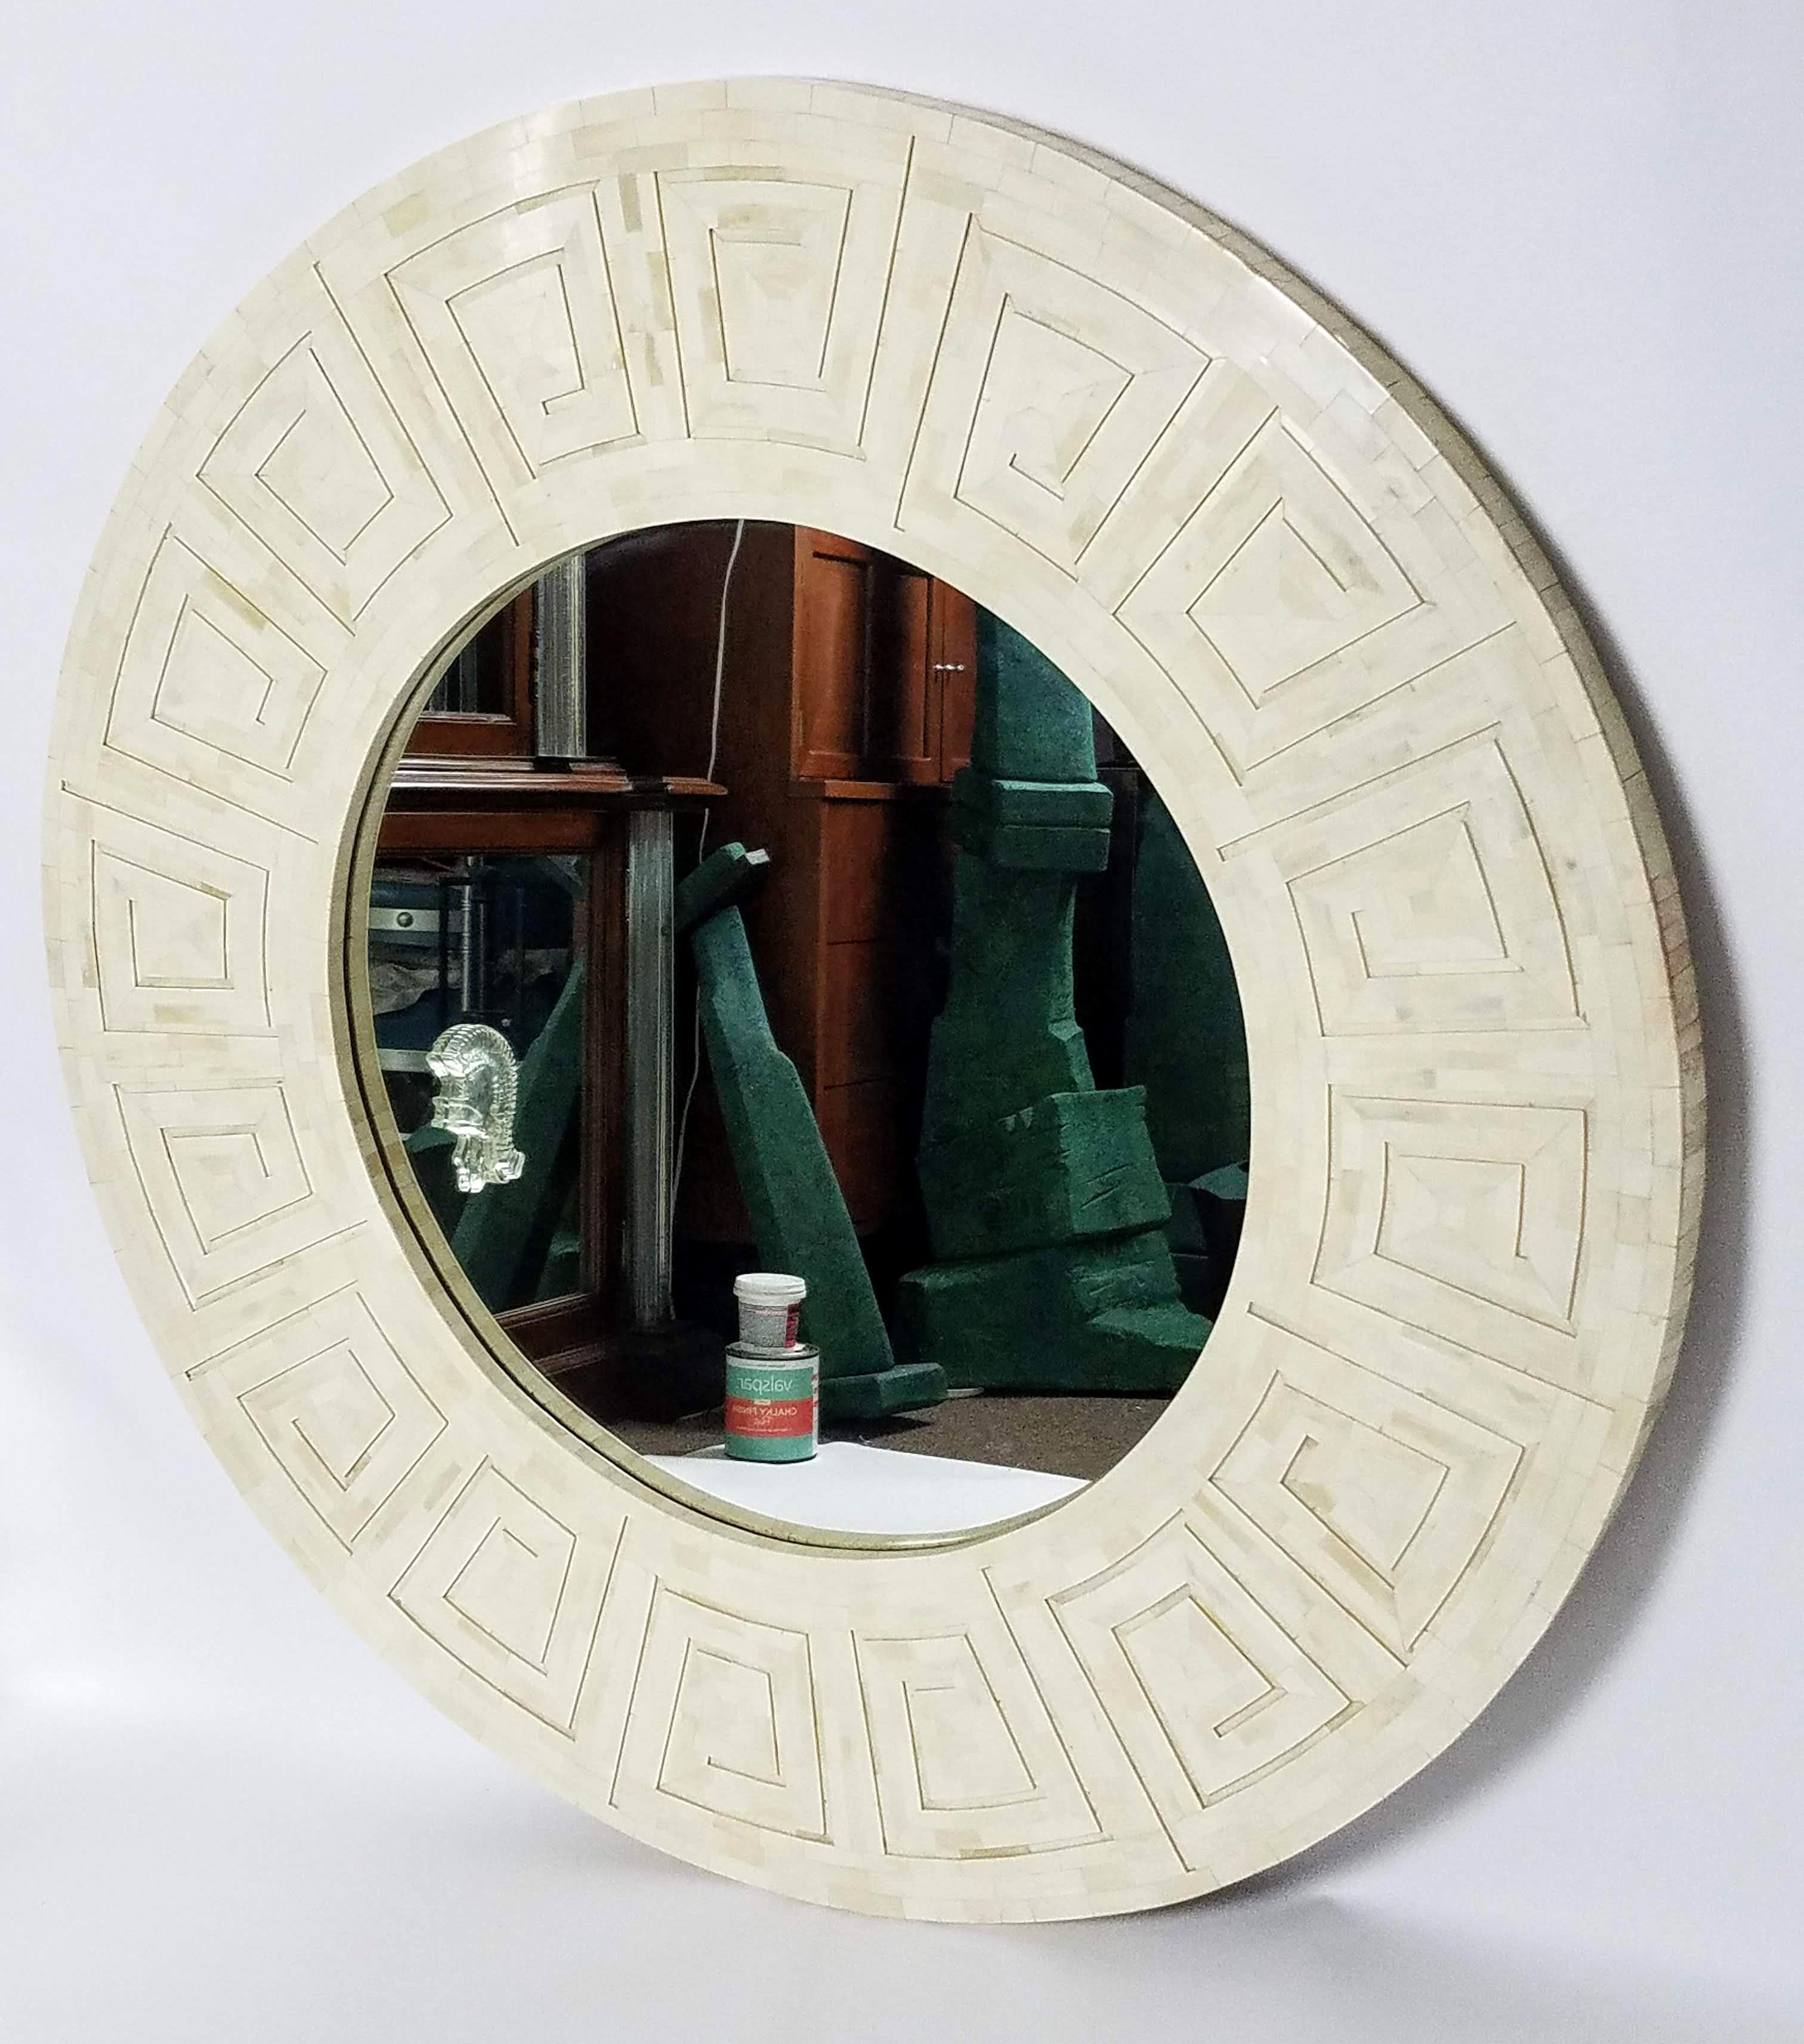 Ein schöner Knochenspiegel mit Mosaik des spanischen Künstlers Enrique Garcel.
Das Video entspricht farblich am ehesten der tatsächlichen Farbe des Spiegels.
Der Spiegel ist in gutem Zustand, es fehlen keine Teile.
  